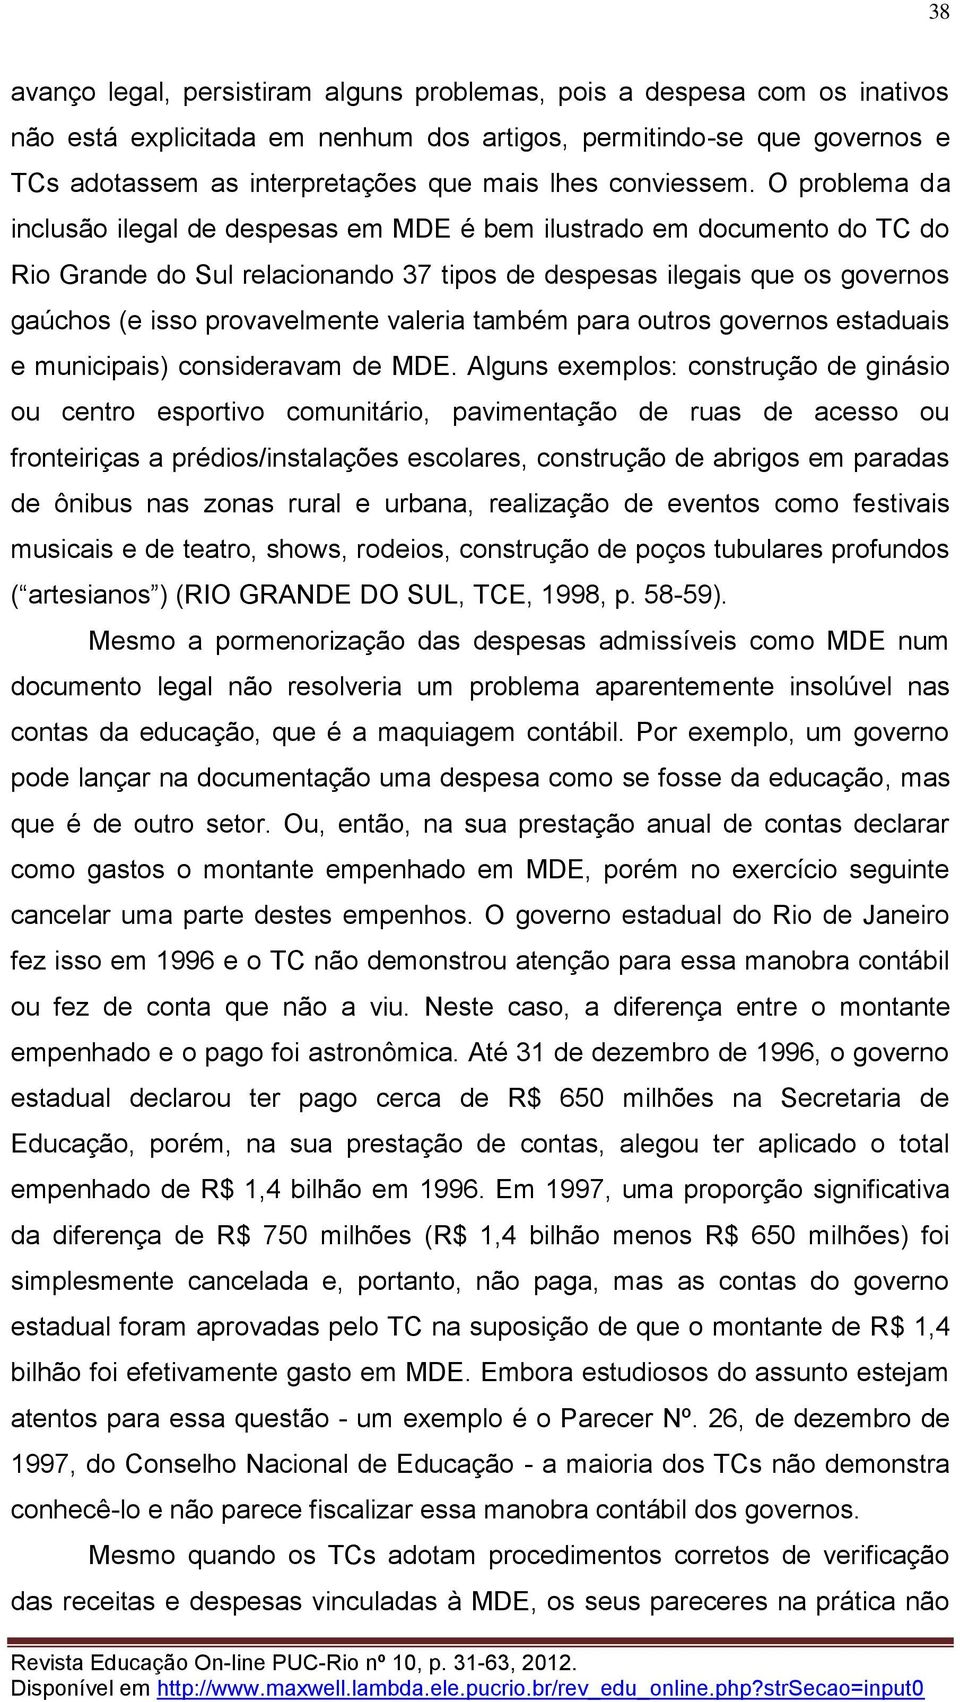 O problema da inclusão ilegal de despesas em MDE é bem ilustrado em documento do TC do Rio Grande do Sul relacionando 37 tipos de despesas ilegais que os governos gaúchos (e isso provavelmente